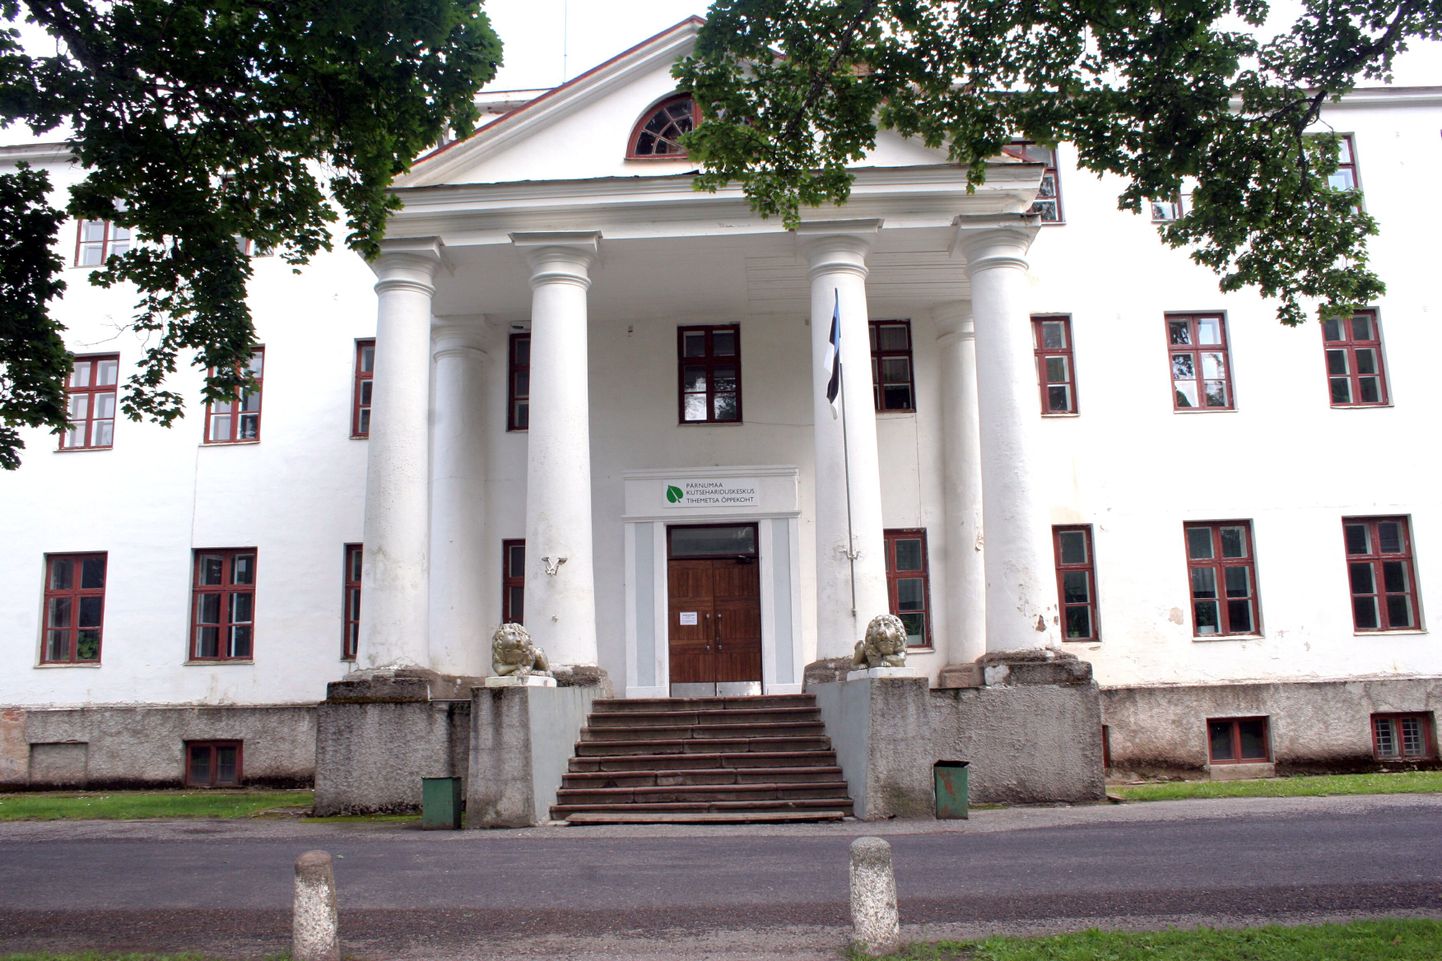 Pärnumaa kutsehariduskeskuse Voltveti koolituskeskus on kandnud õppeasutusena erinevaid nimesid, kuid selle ajalugu ulatub 1925. aastasse, mil mõisahäärberis alustas tööd Voltveti metsakool.